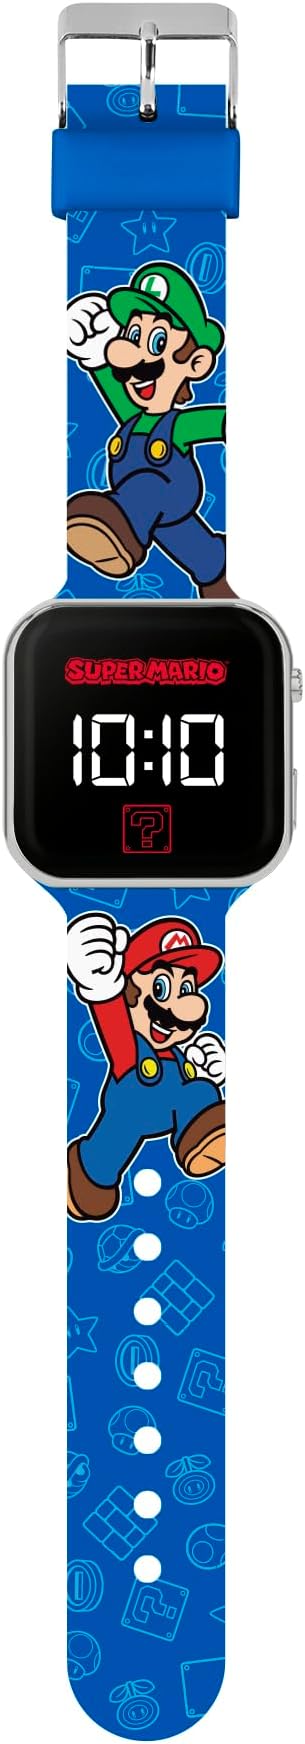 Peers Hardy - Super Mario Bros. Printed LED Watch